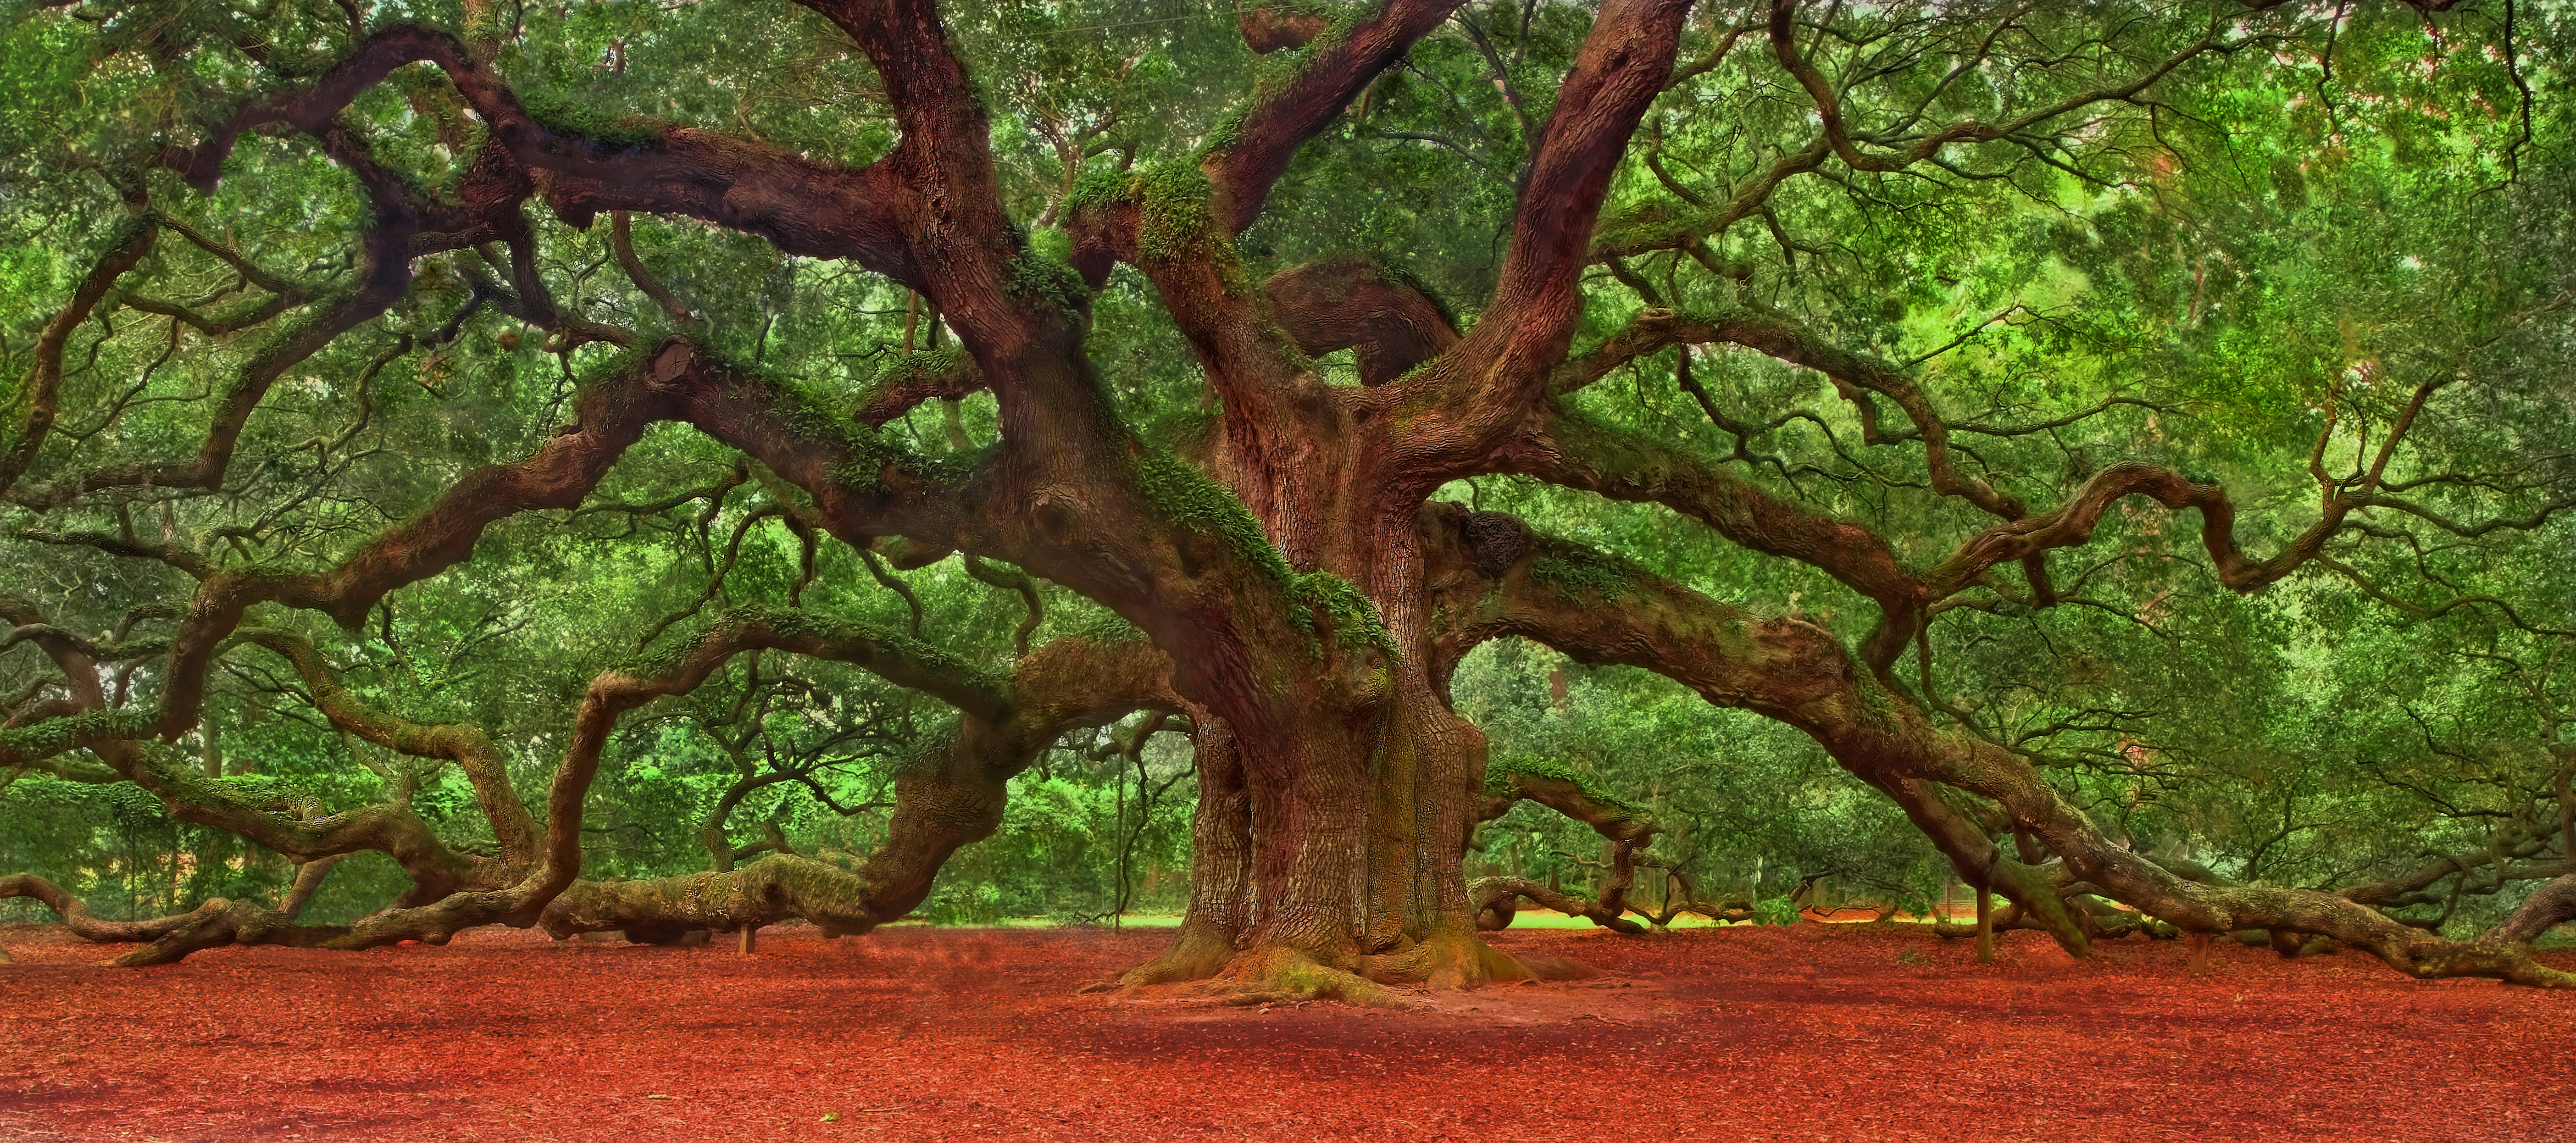 Earth Angel Oak Tree HD Wallpaper | Background Image